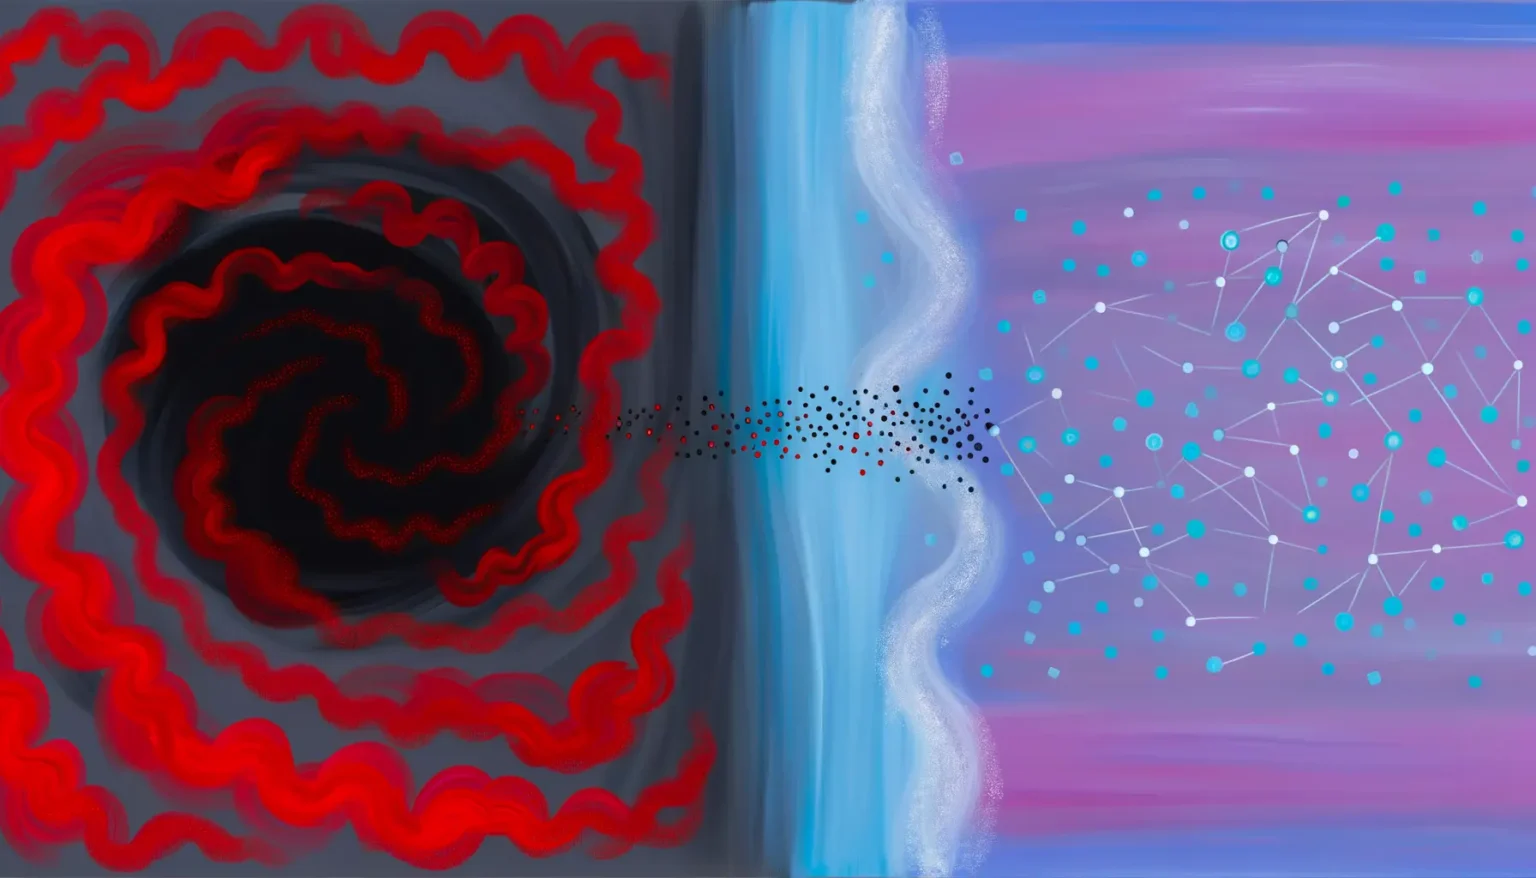 Abstrakte digitale Kunst mit kontrastreichen Elementen: Ein Spiralmuster mit roten und schwarzen Tönen auf der linken Seite, ein Bereich mit vertikaler blauer und weißer Streifung in der Mitte, der in eine Musterung von schwarzen Punkten übergeht, und eine Netzstruktur mit verbundenen blauen Punkten auf einem rosa-lila Hintergrund rechts.